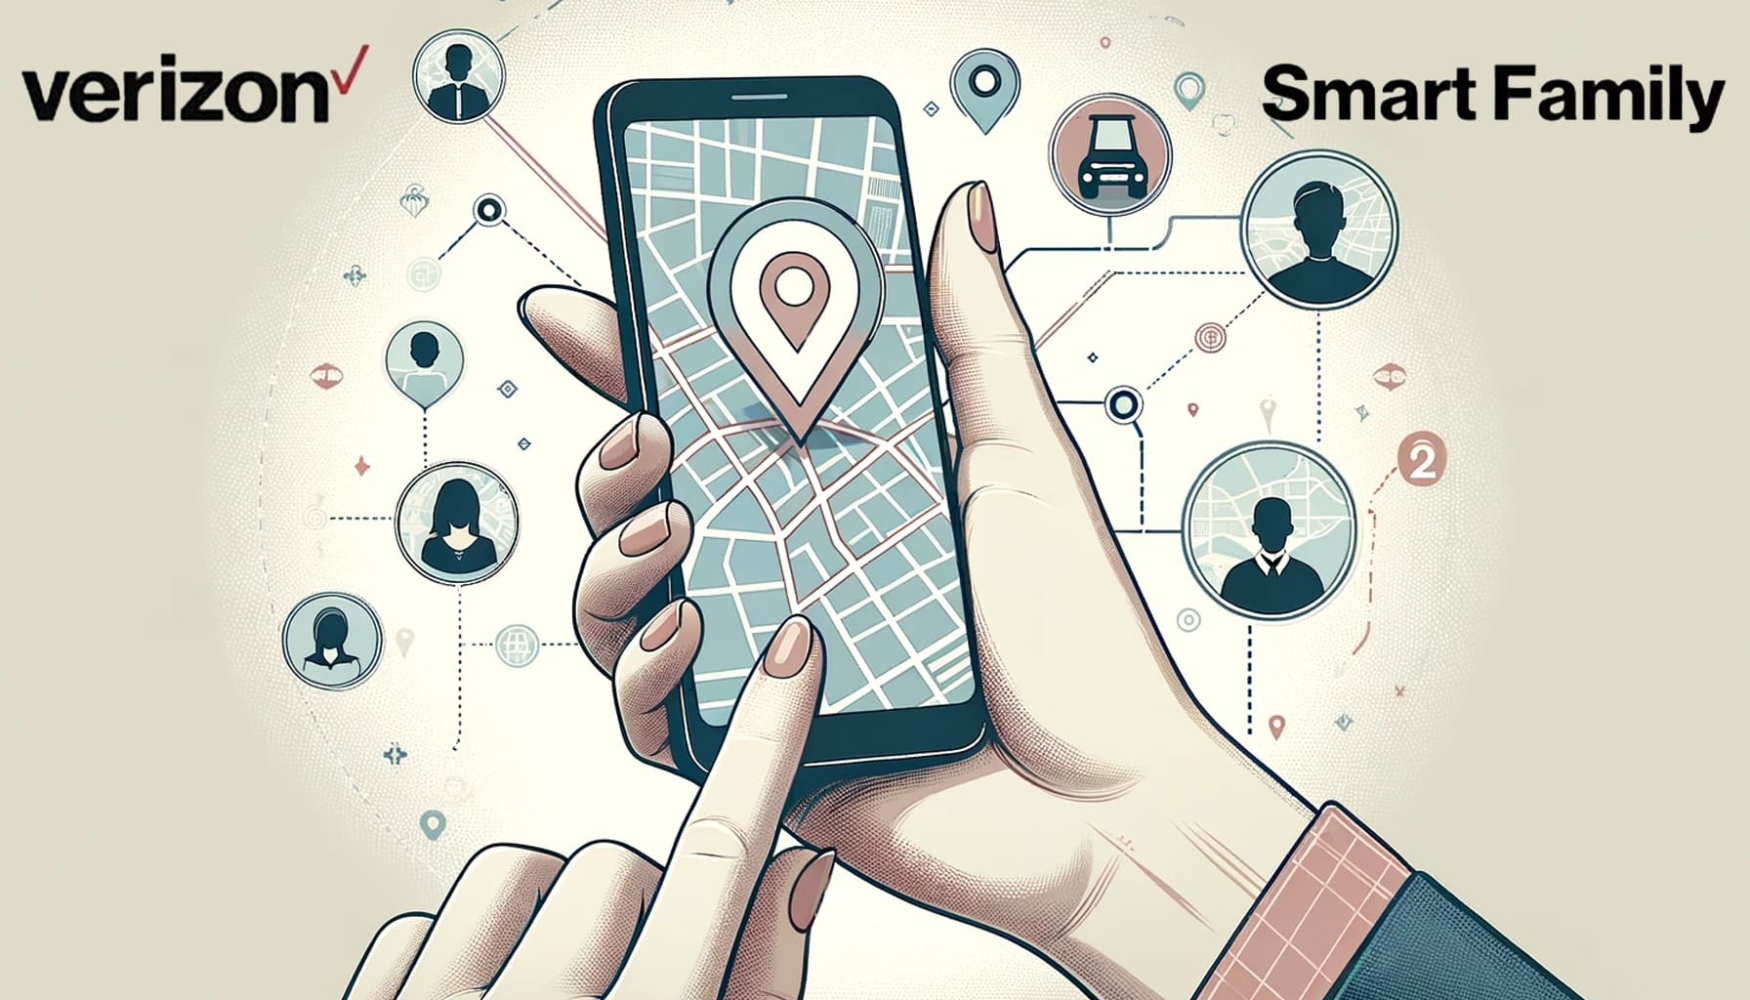 Imagen para el servicio Smart Family de Verizon de las manos de una mujer sosteniendo un teléfono con una ubicación en un mapa sobre él